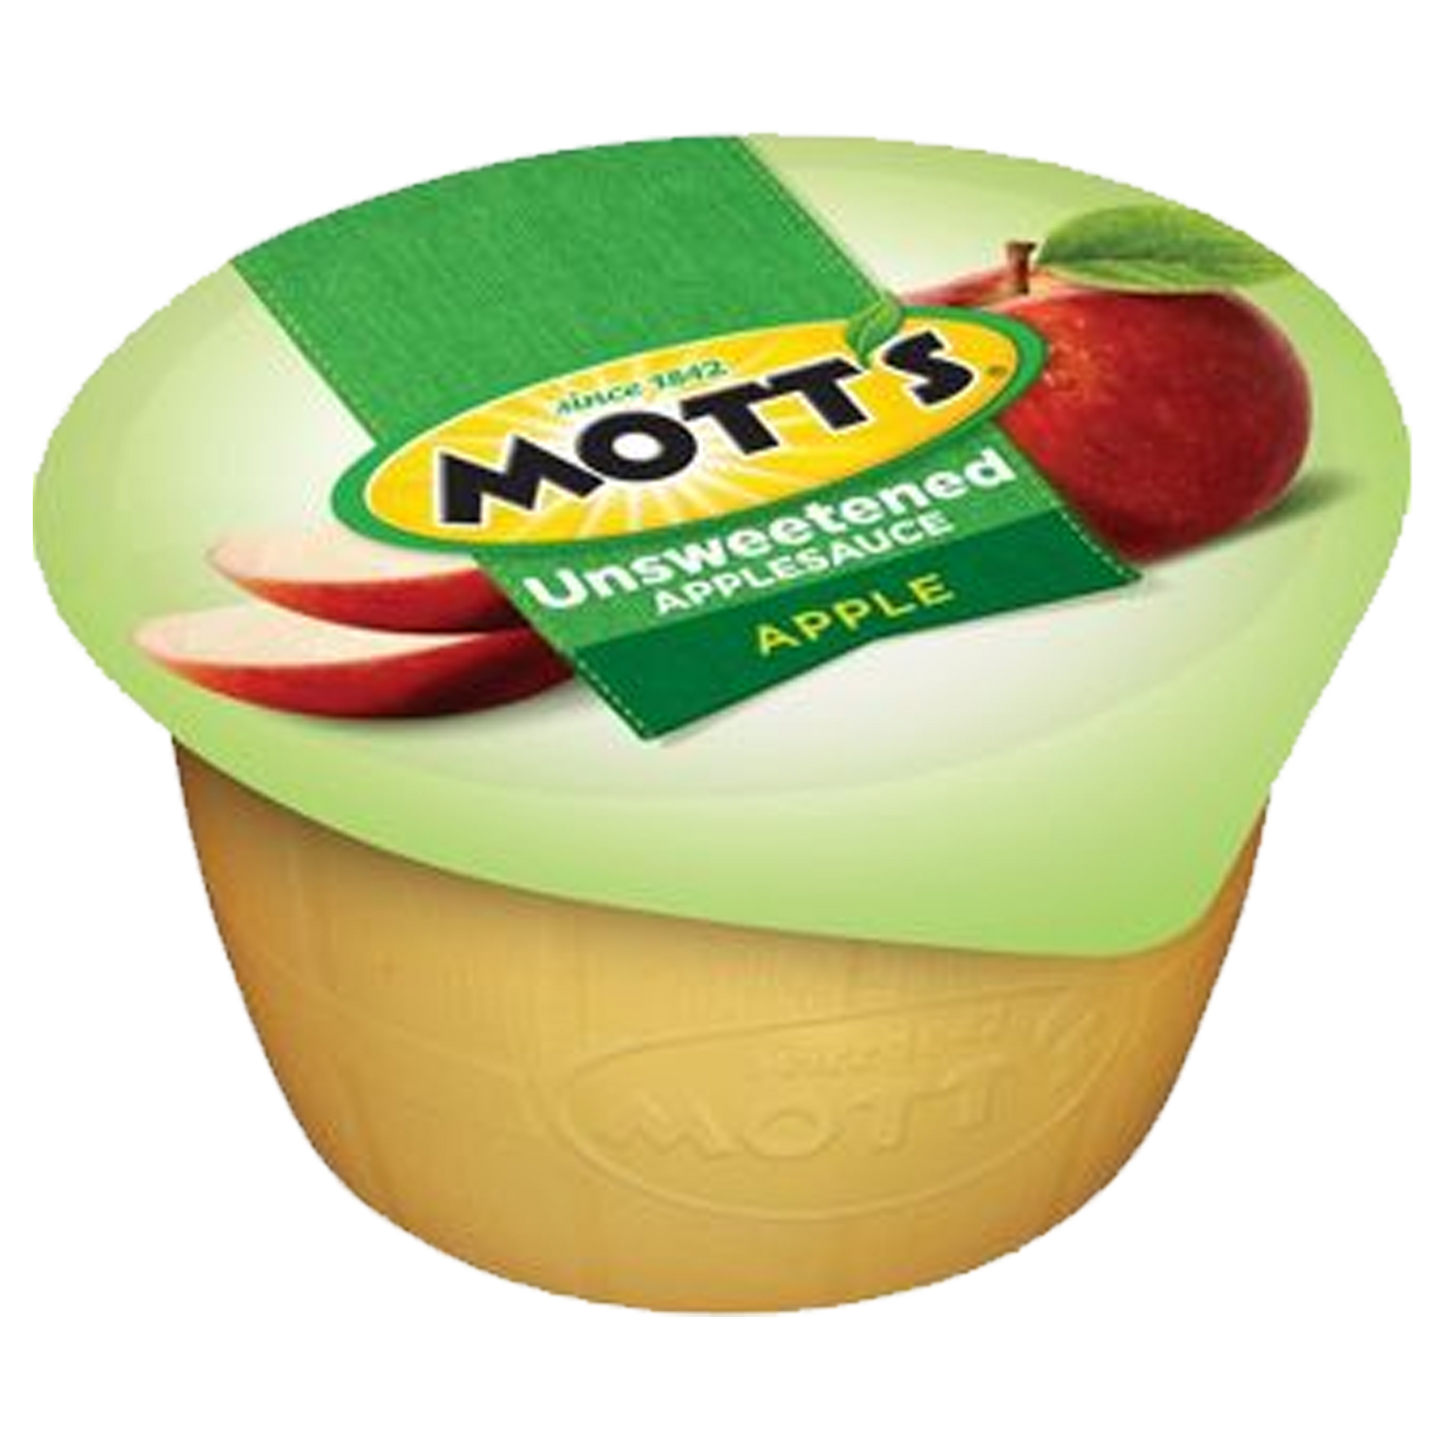 Mott's Unsweetened Apple Applesauce 111g